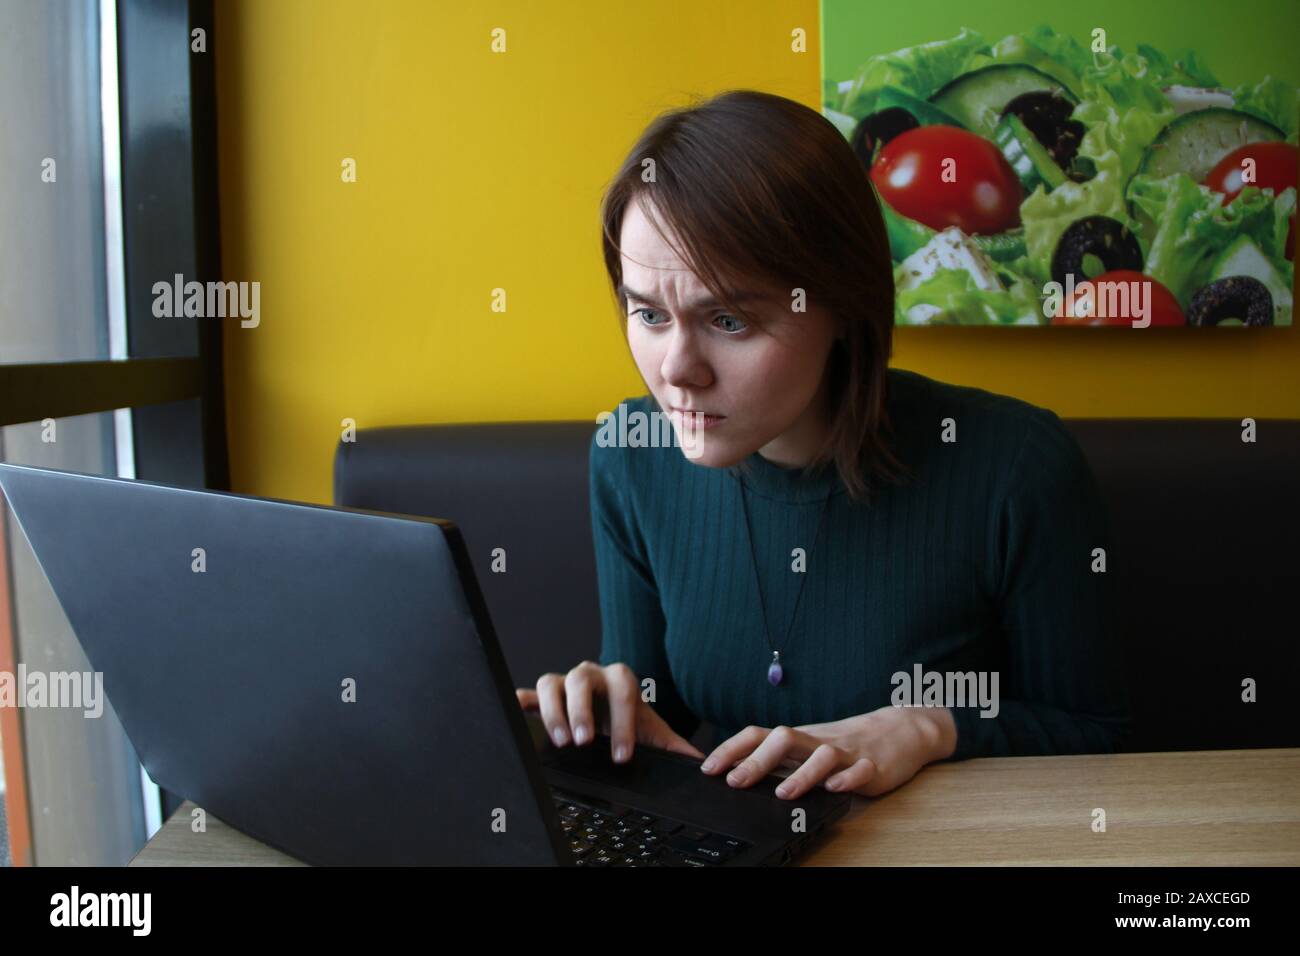 Ragazza con un'espressione di tensione perplessa si siede seduta lavorando ad un portatile ad un tavolo in un caffè su un divano marrone contro un muro giallo. Foto Stock